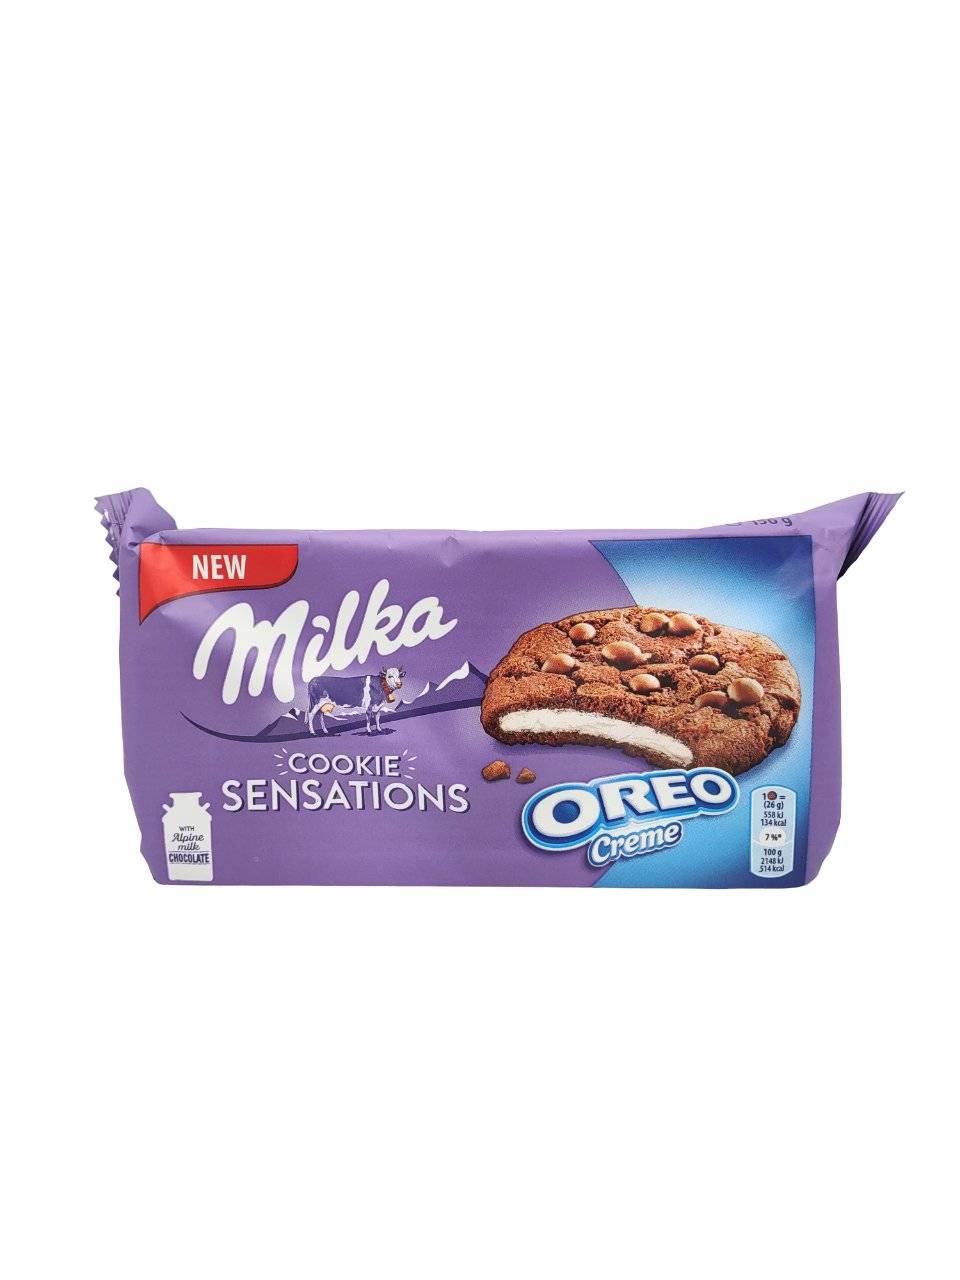 Milka Sensations Cookies 156g